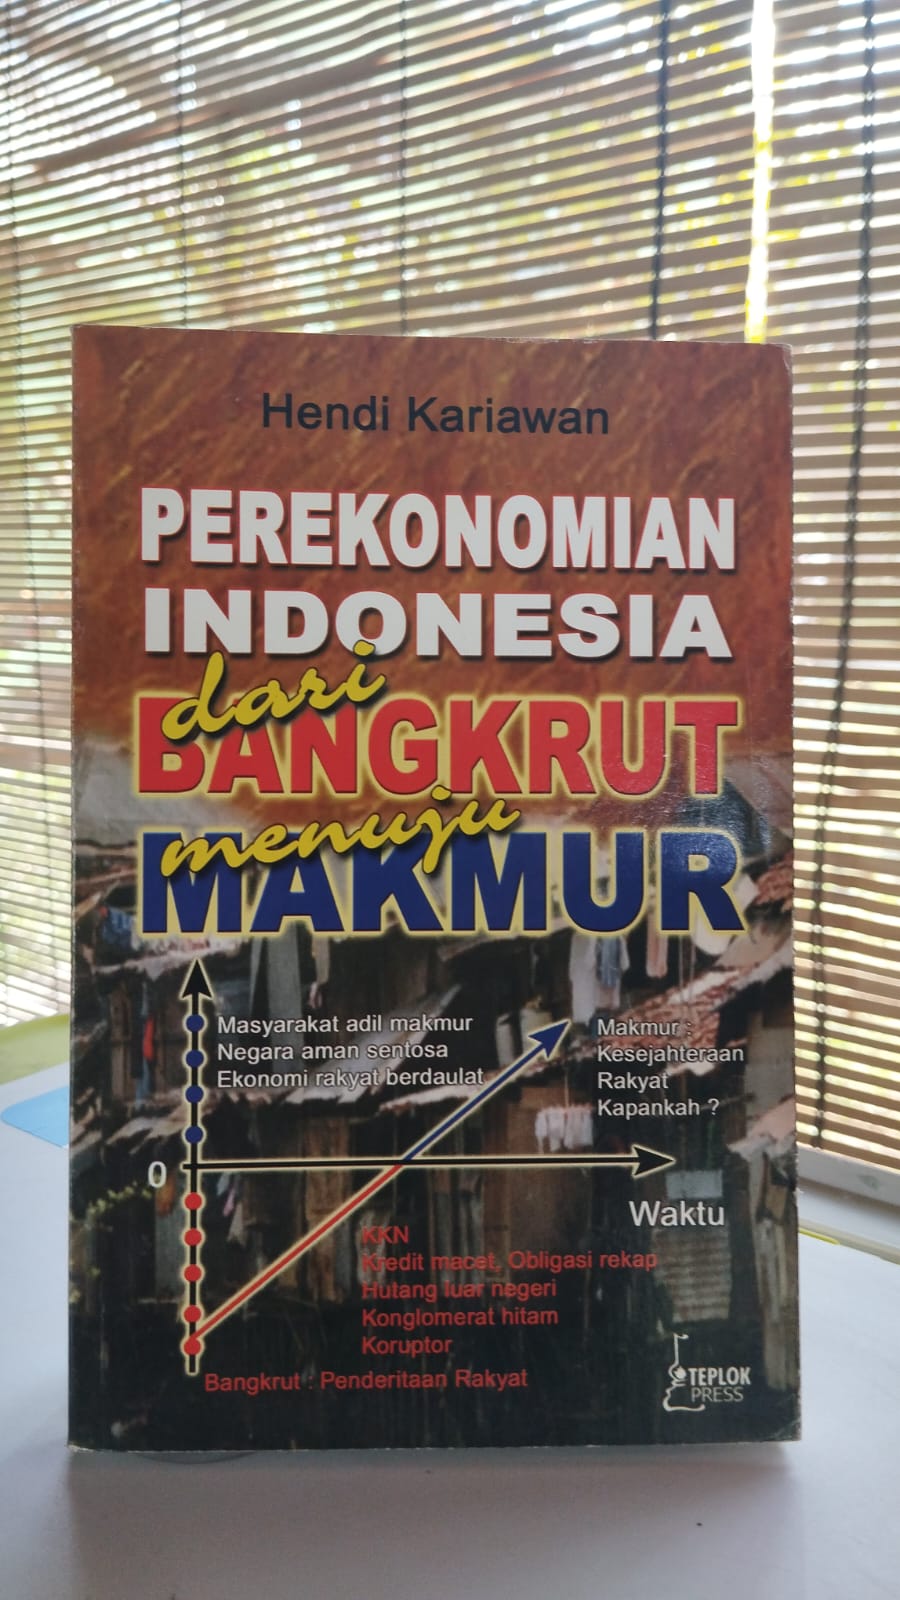 Perekonomian Indonesia dari Bangkrut Menuju Makmur